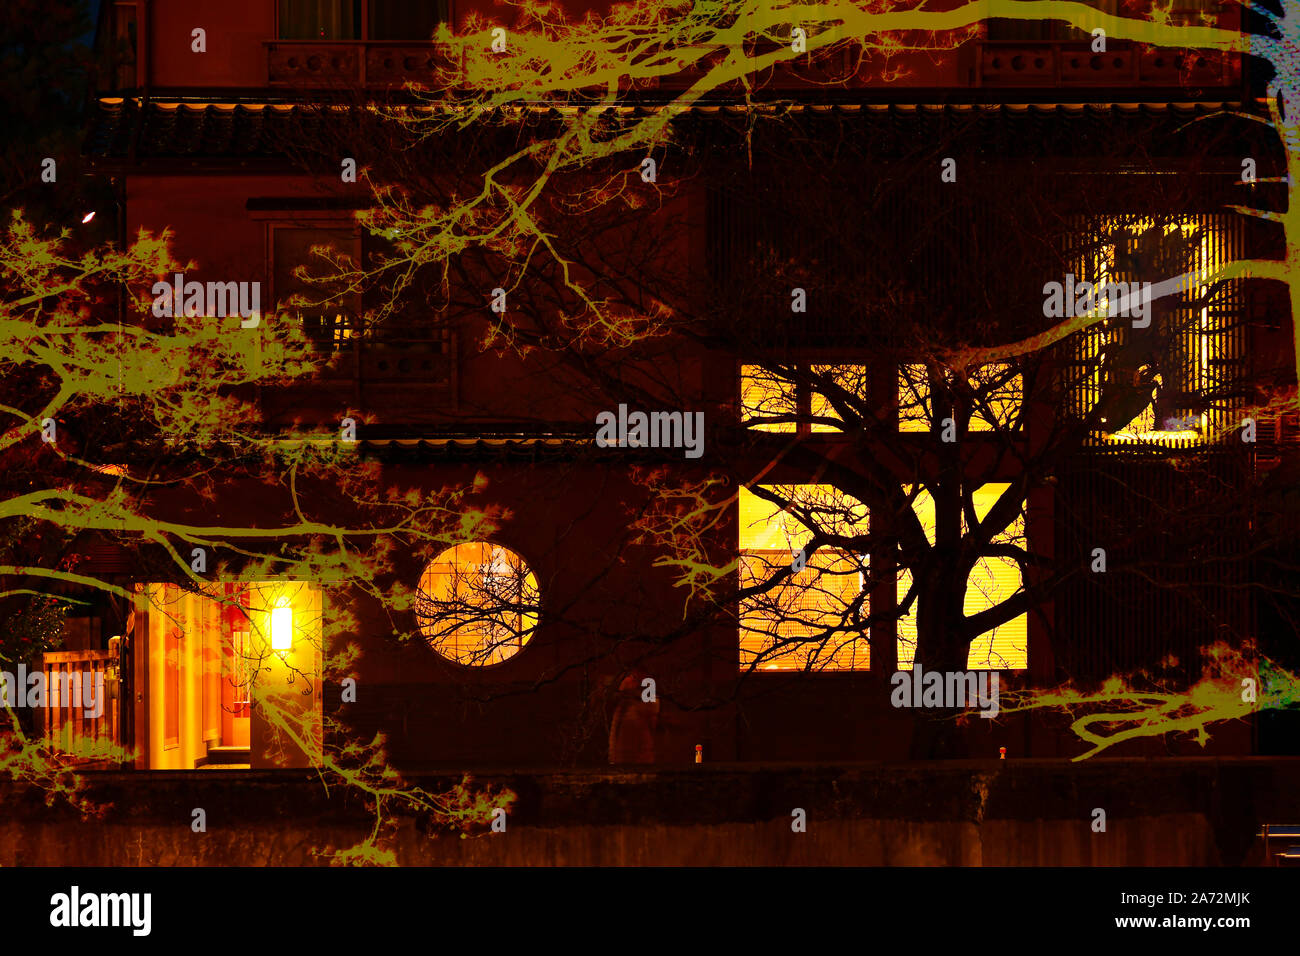 Fond mystérieux avec de grands arbres et de la vieille maison sombre décoré de lumière orange. Arrière-plan de l'Halloween. Banque D'Images